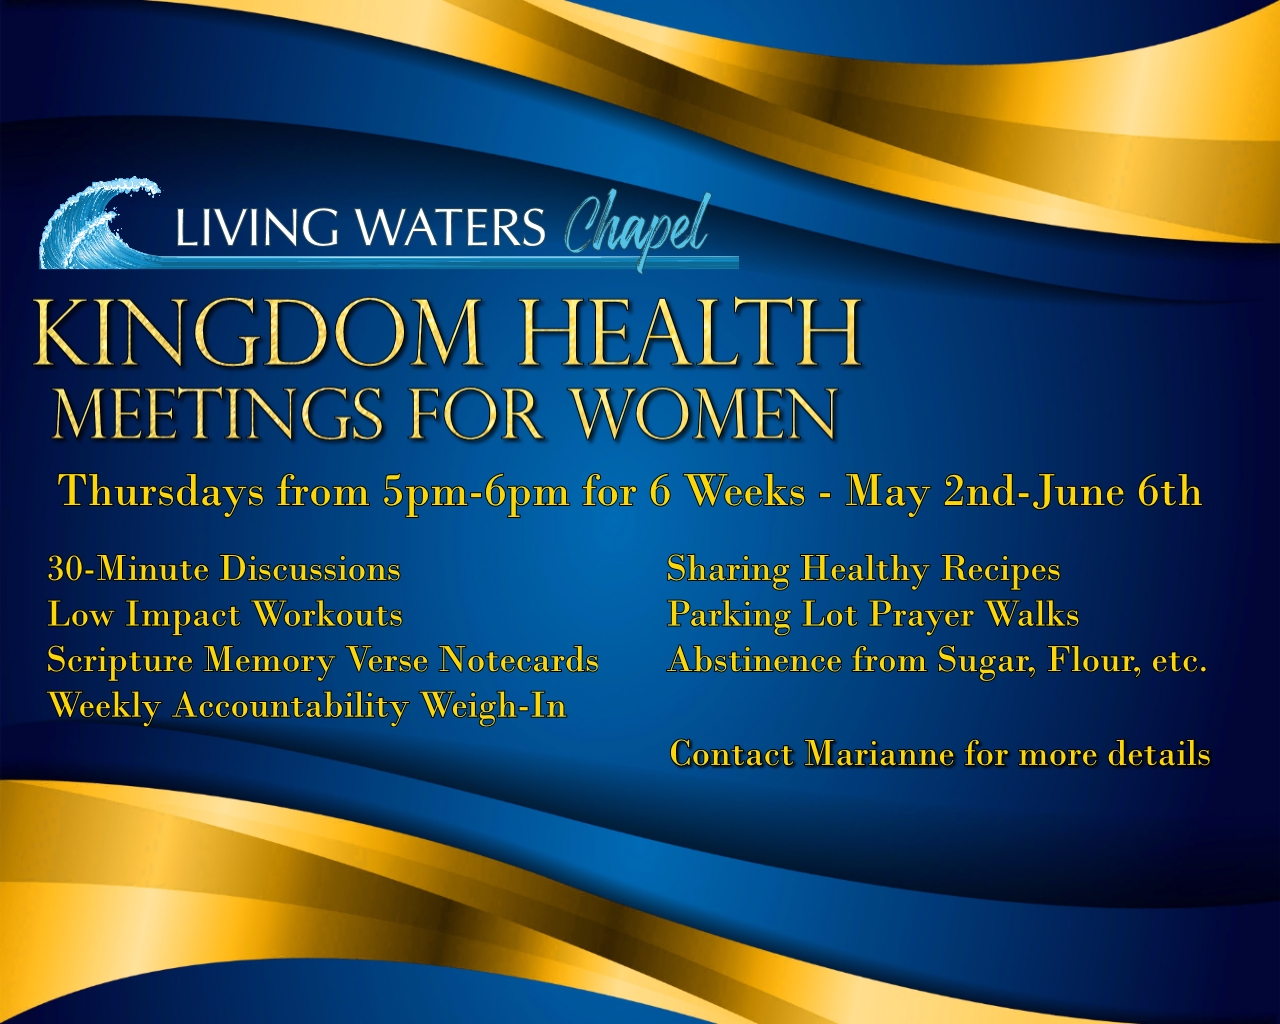 LWC Kingdom Health Meetings